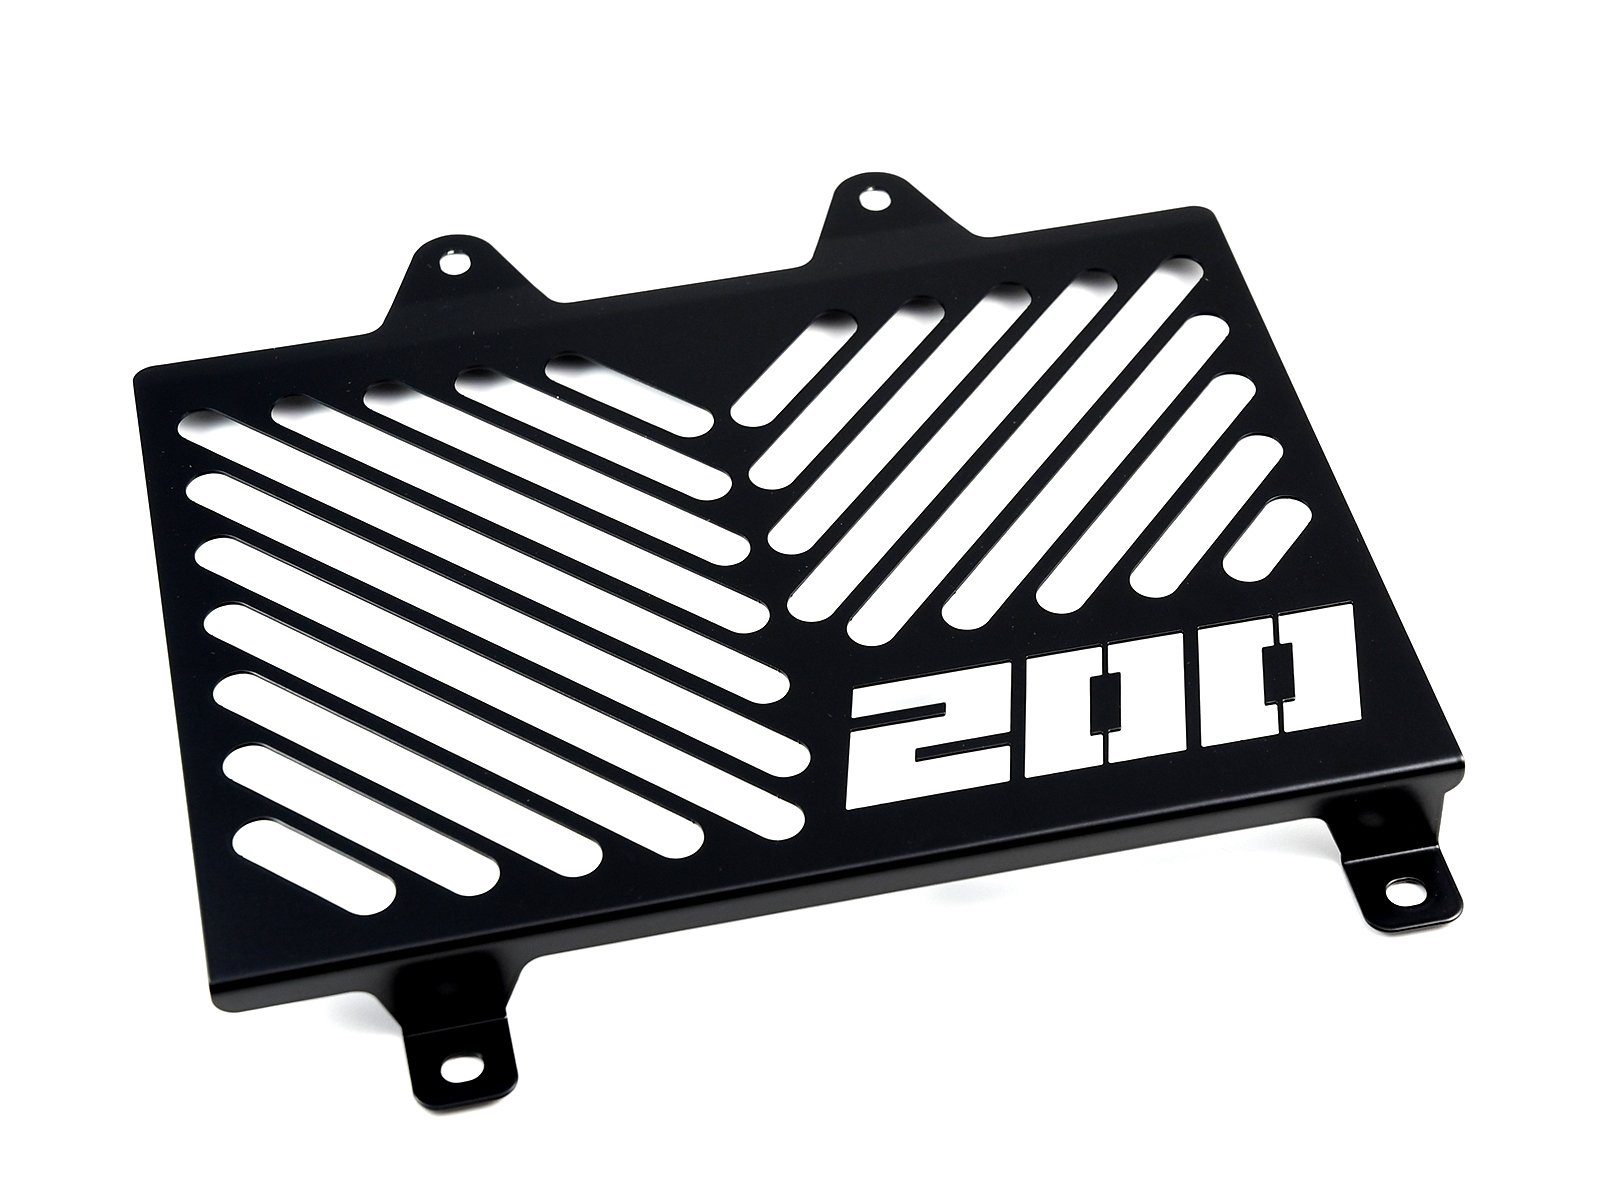 ZIEGER Motorrad-Additiv Kühlerabdeckung für KTM 200 Duke Logo schwarz, Motorradkühlerabdeckung